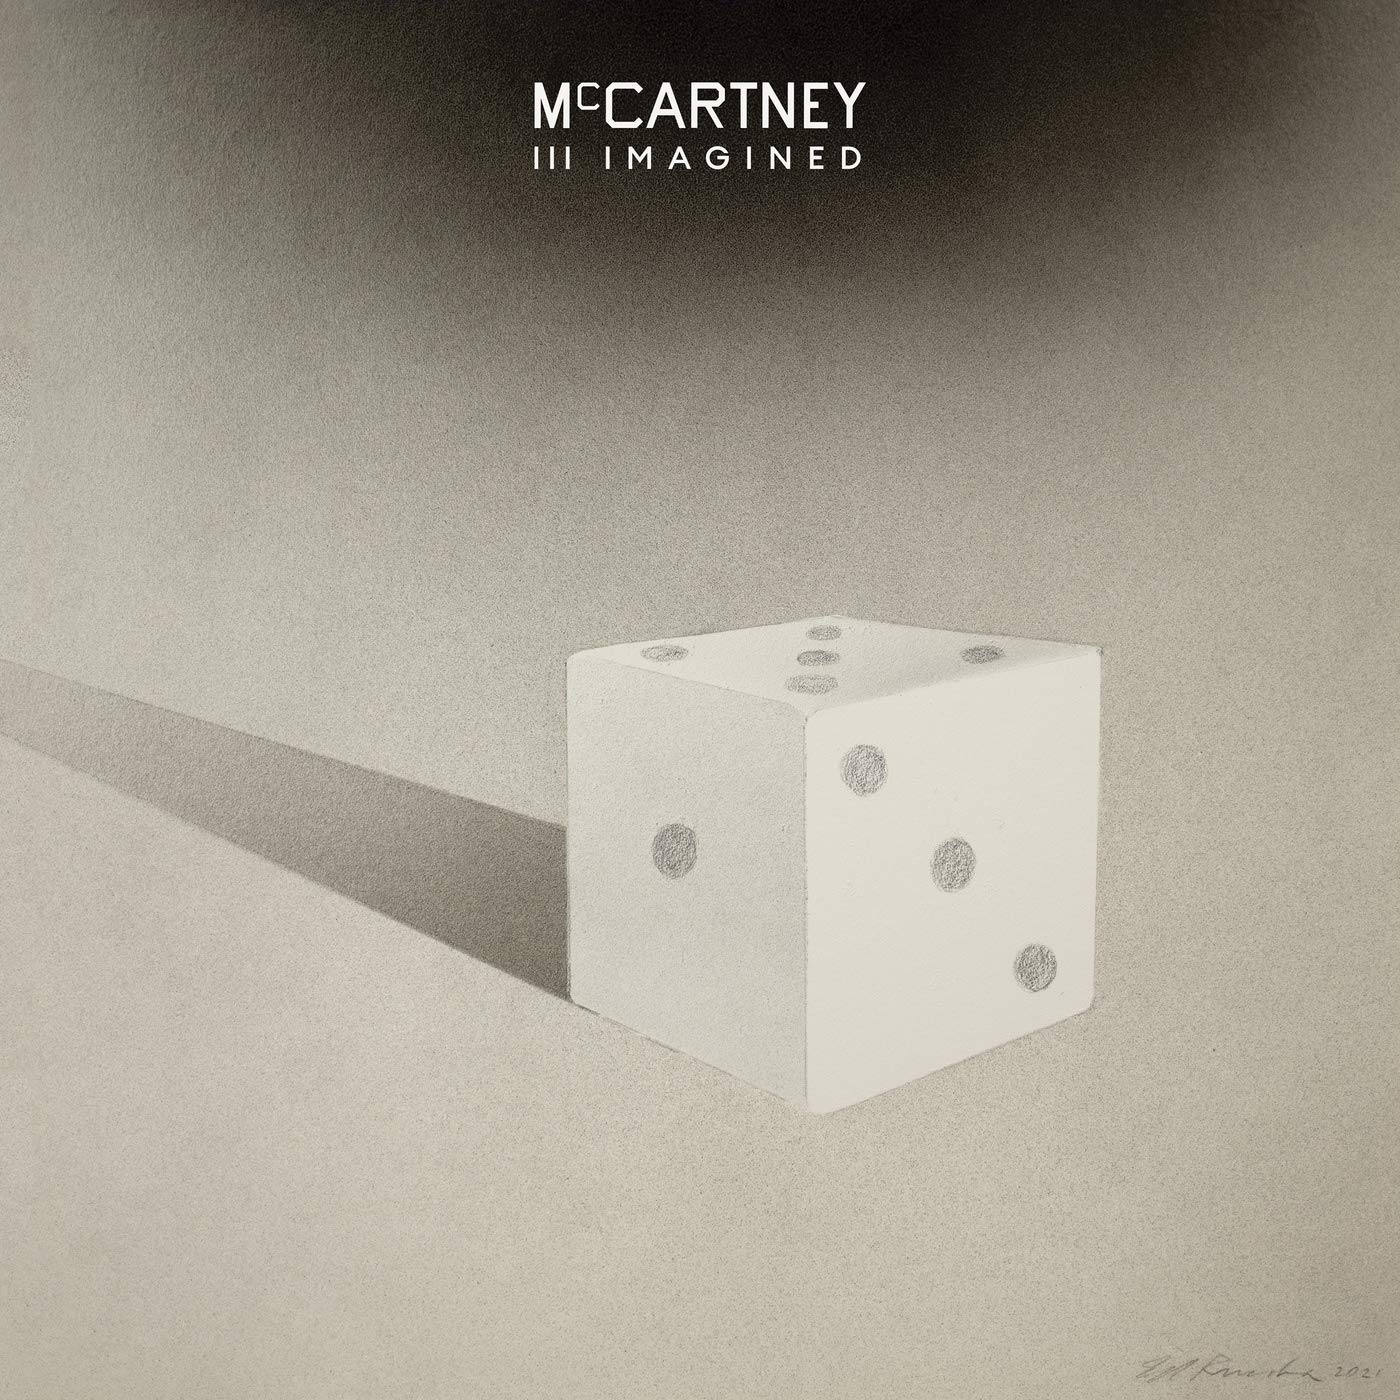 1 mcCrtney album